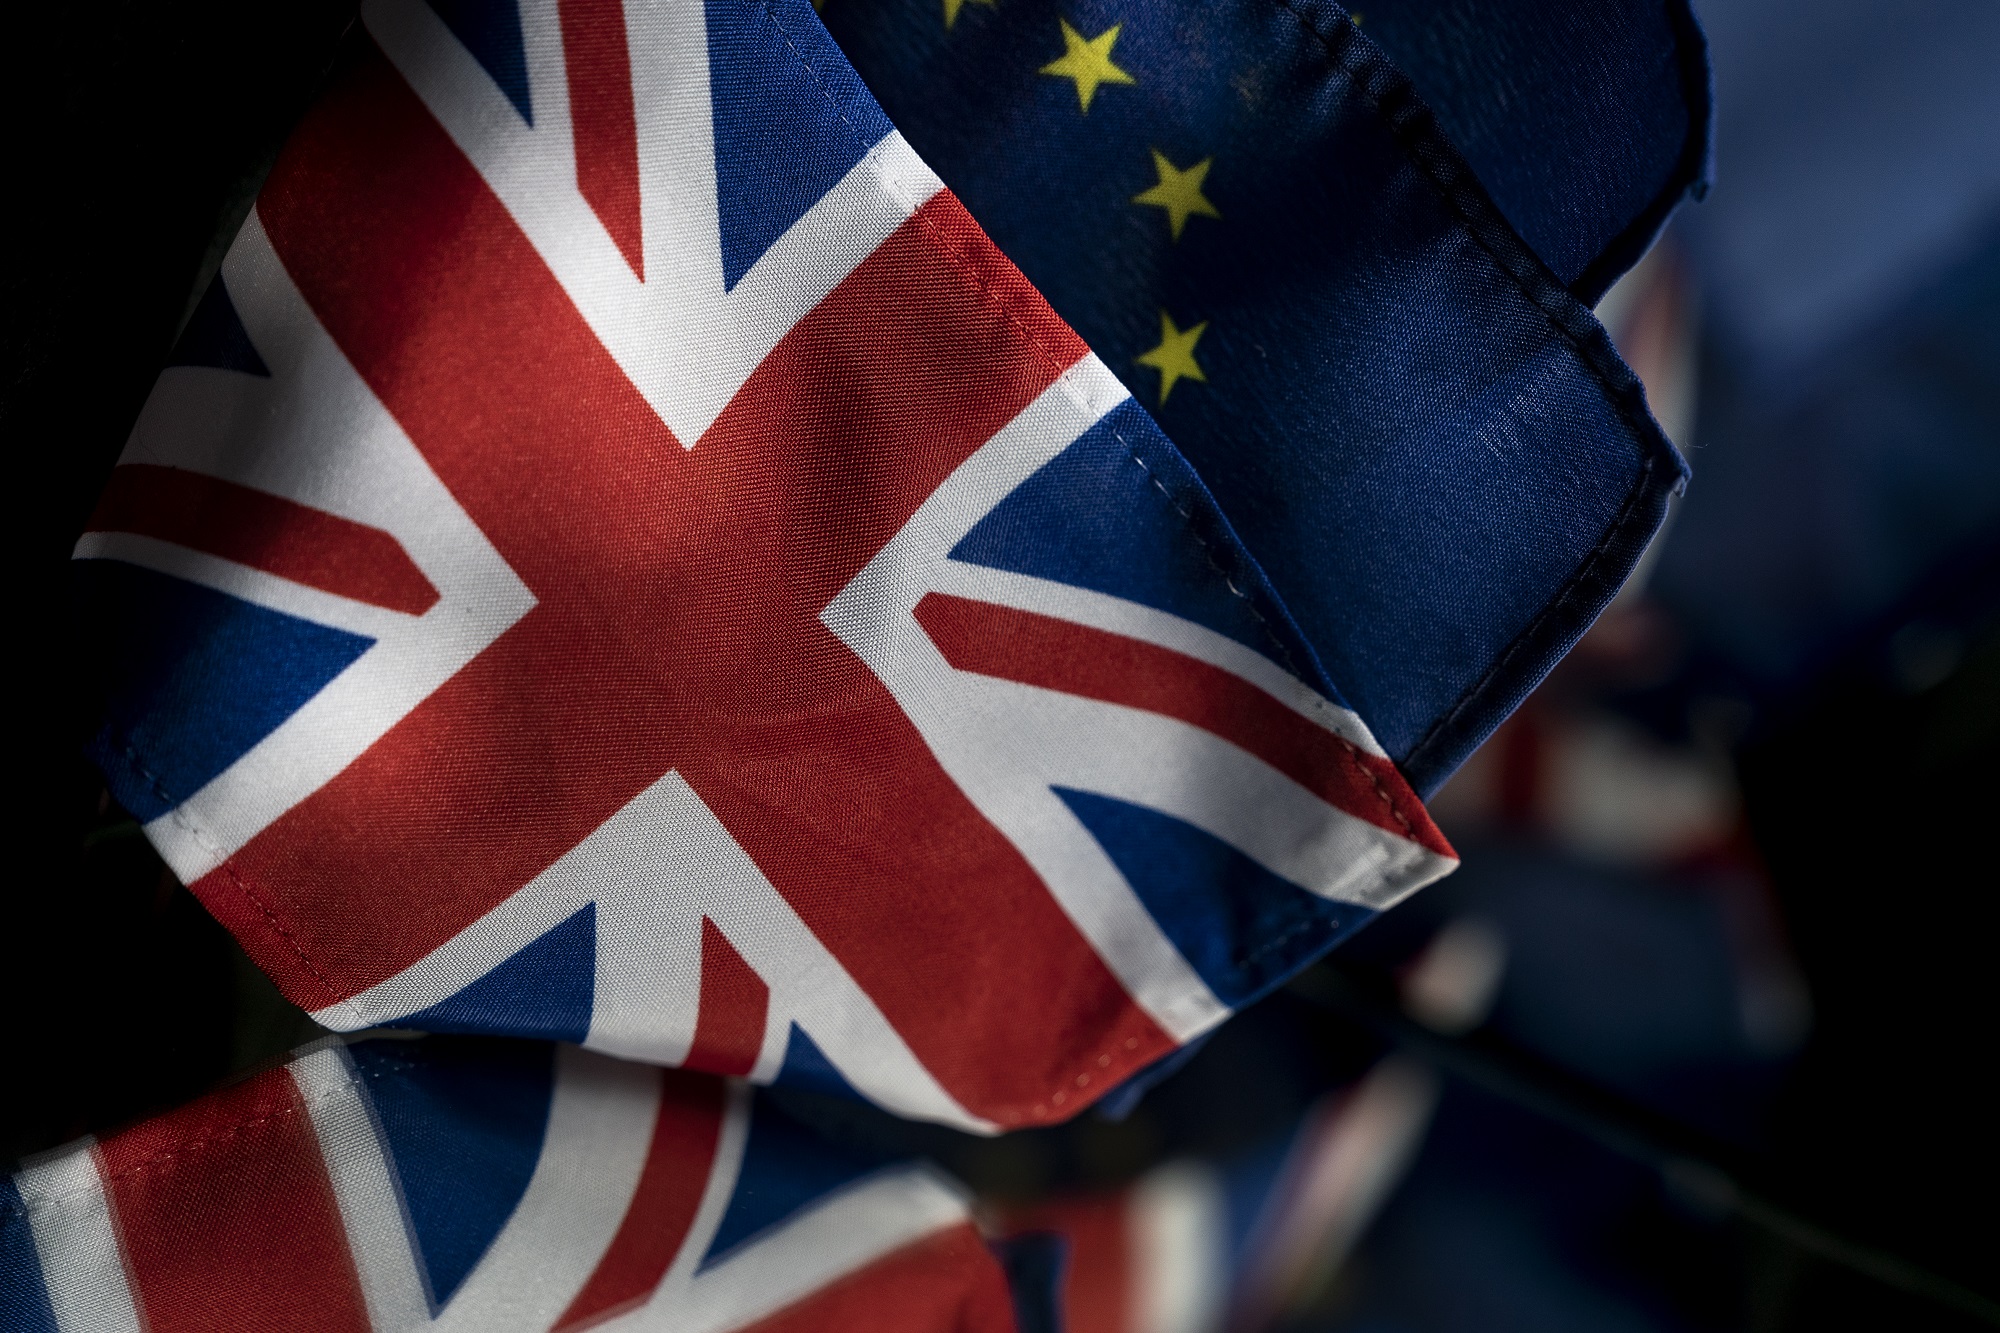 Tras el acuerdo histórico, el Reino Unido encara los desafíos del Brexit